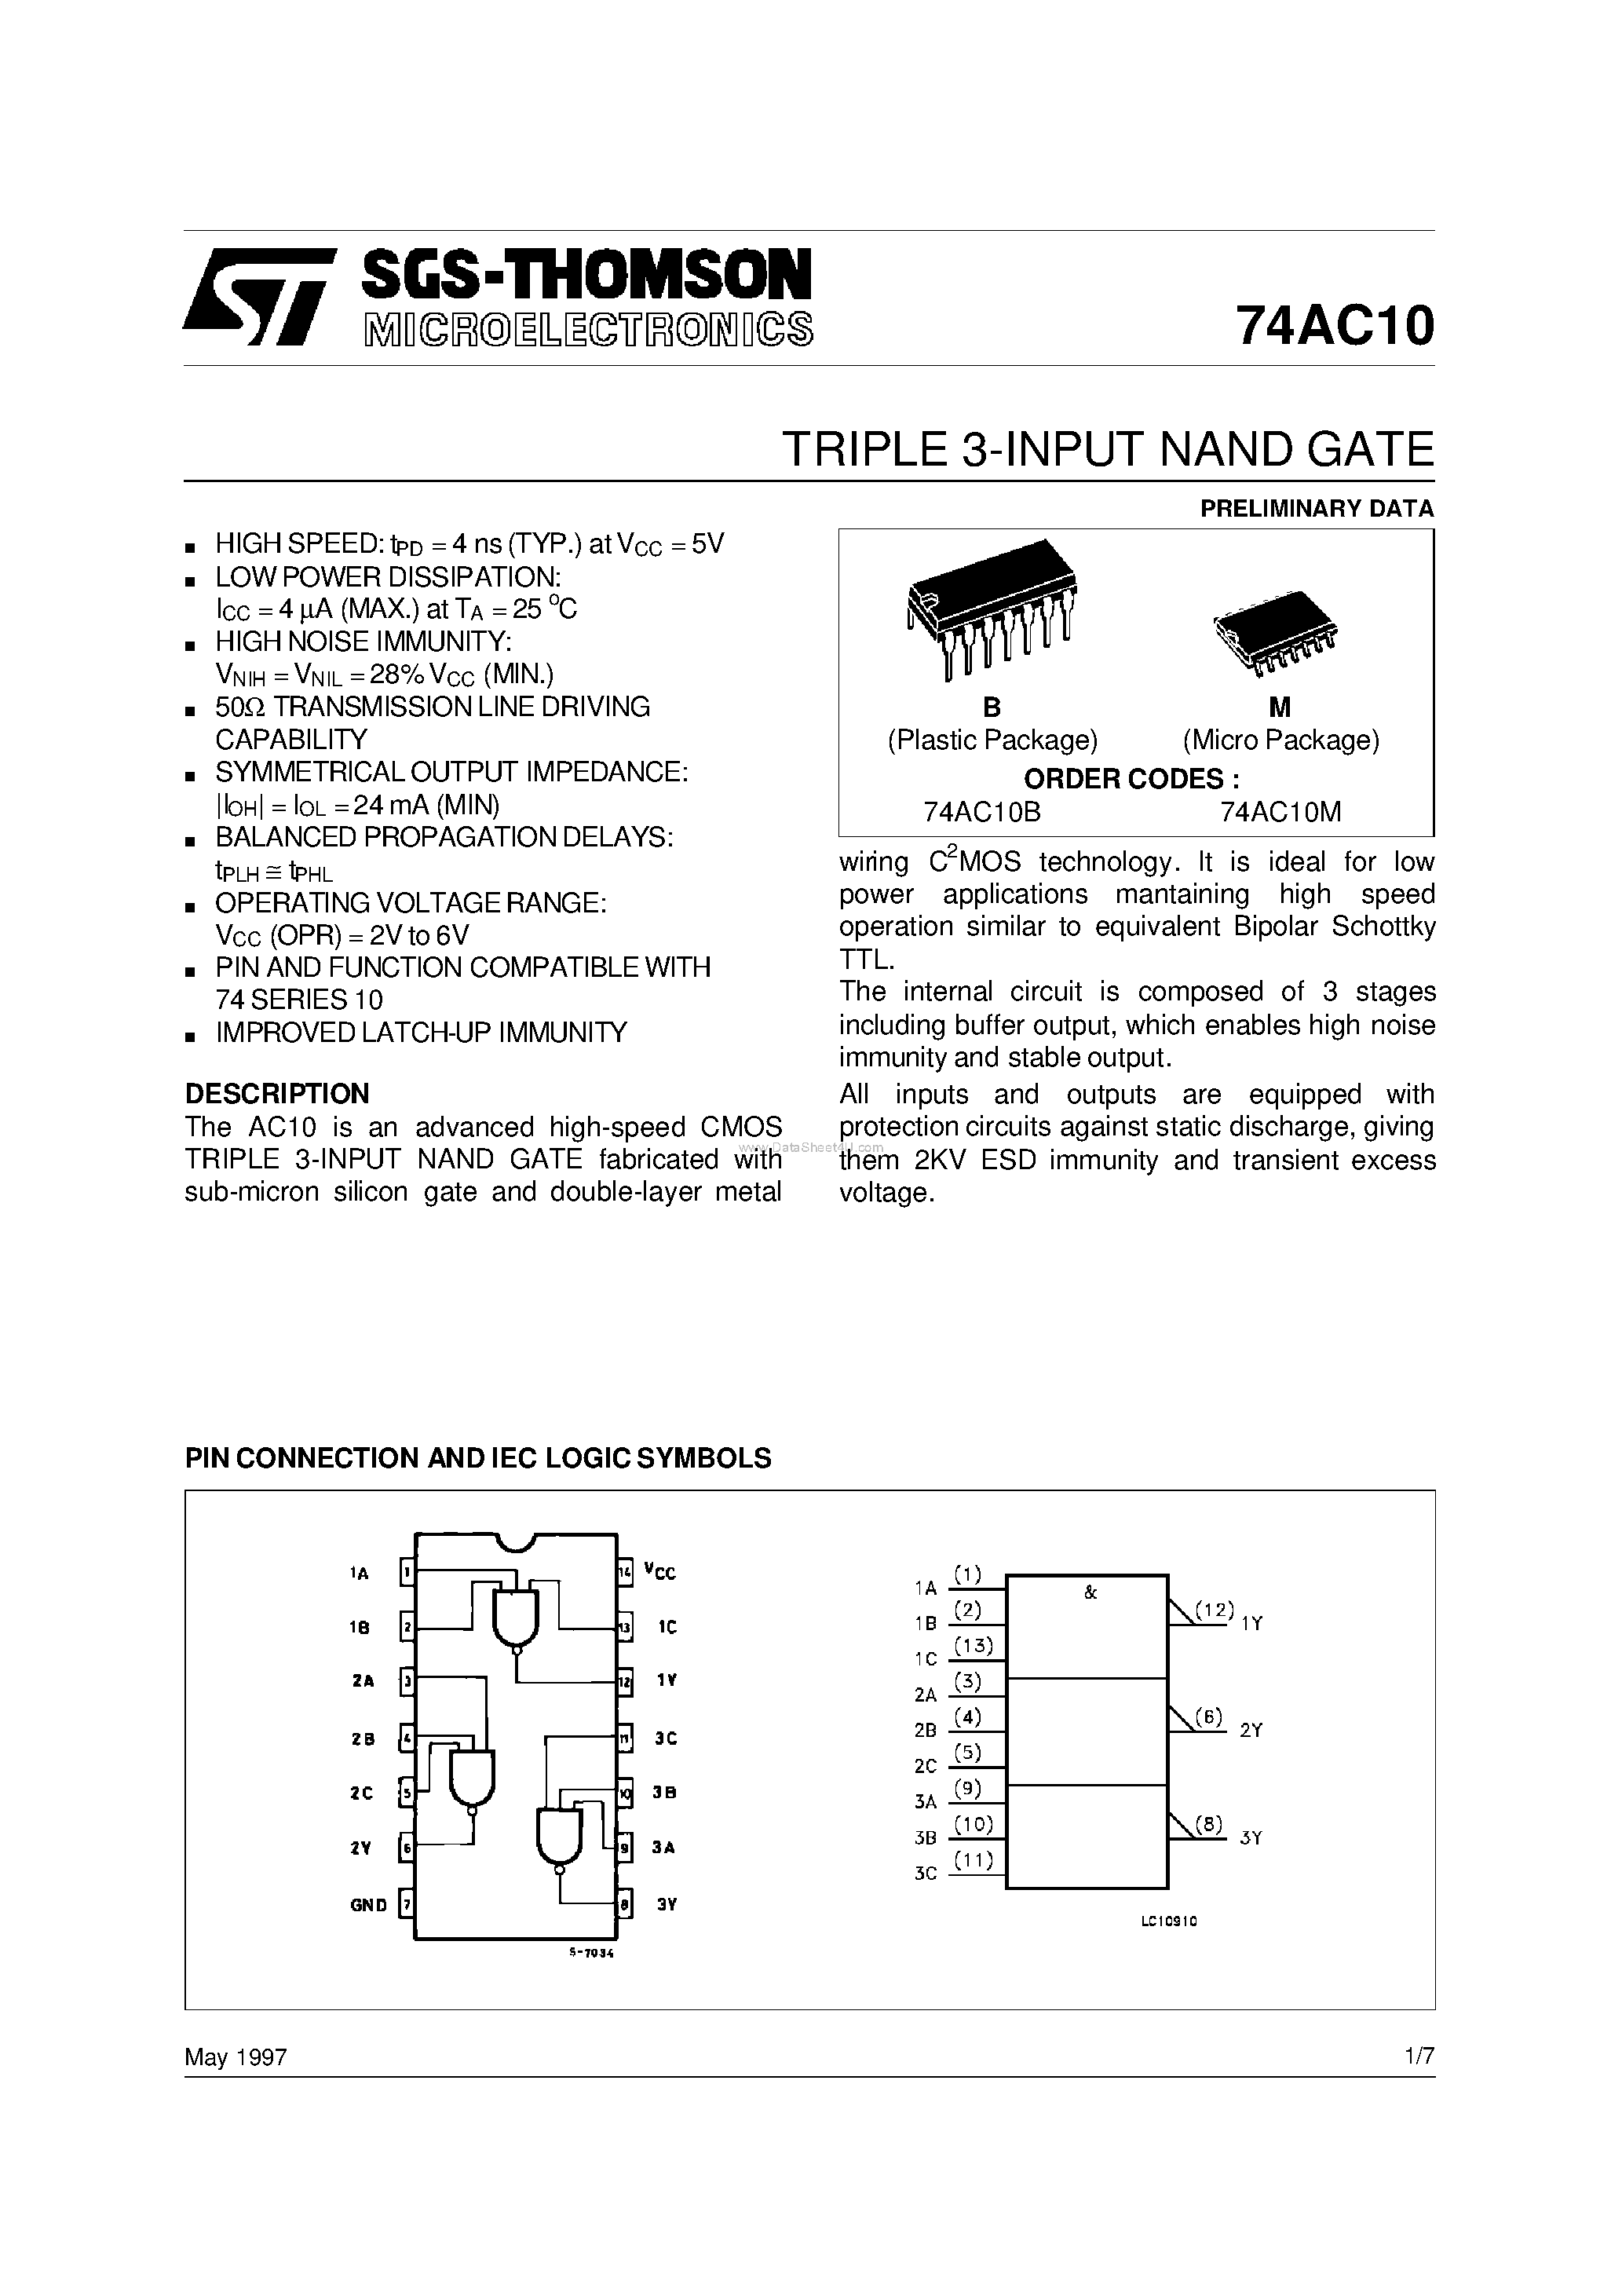 Datasheet 74AC10M - TRIPLE 3-INPUT NAND GATE page 1